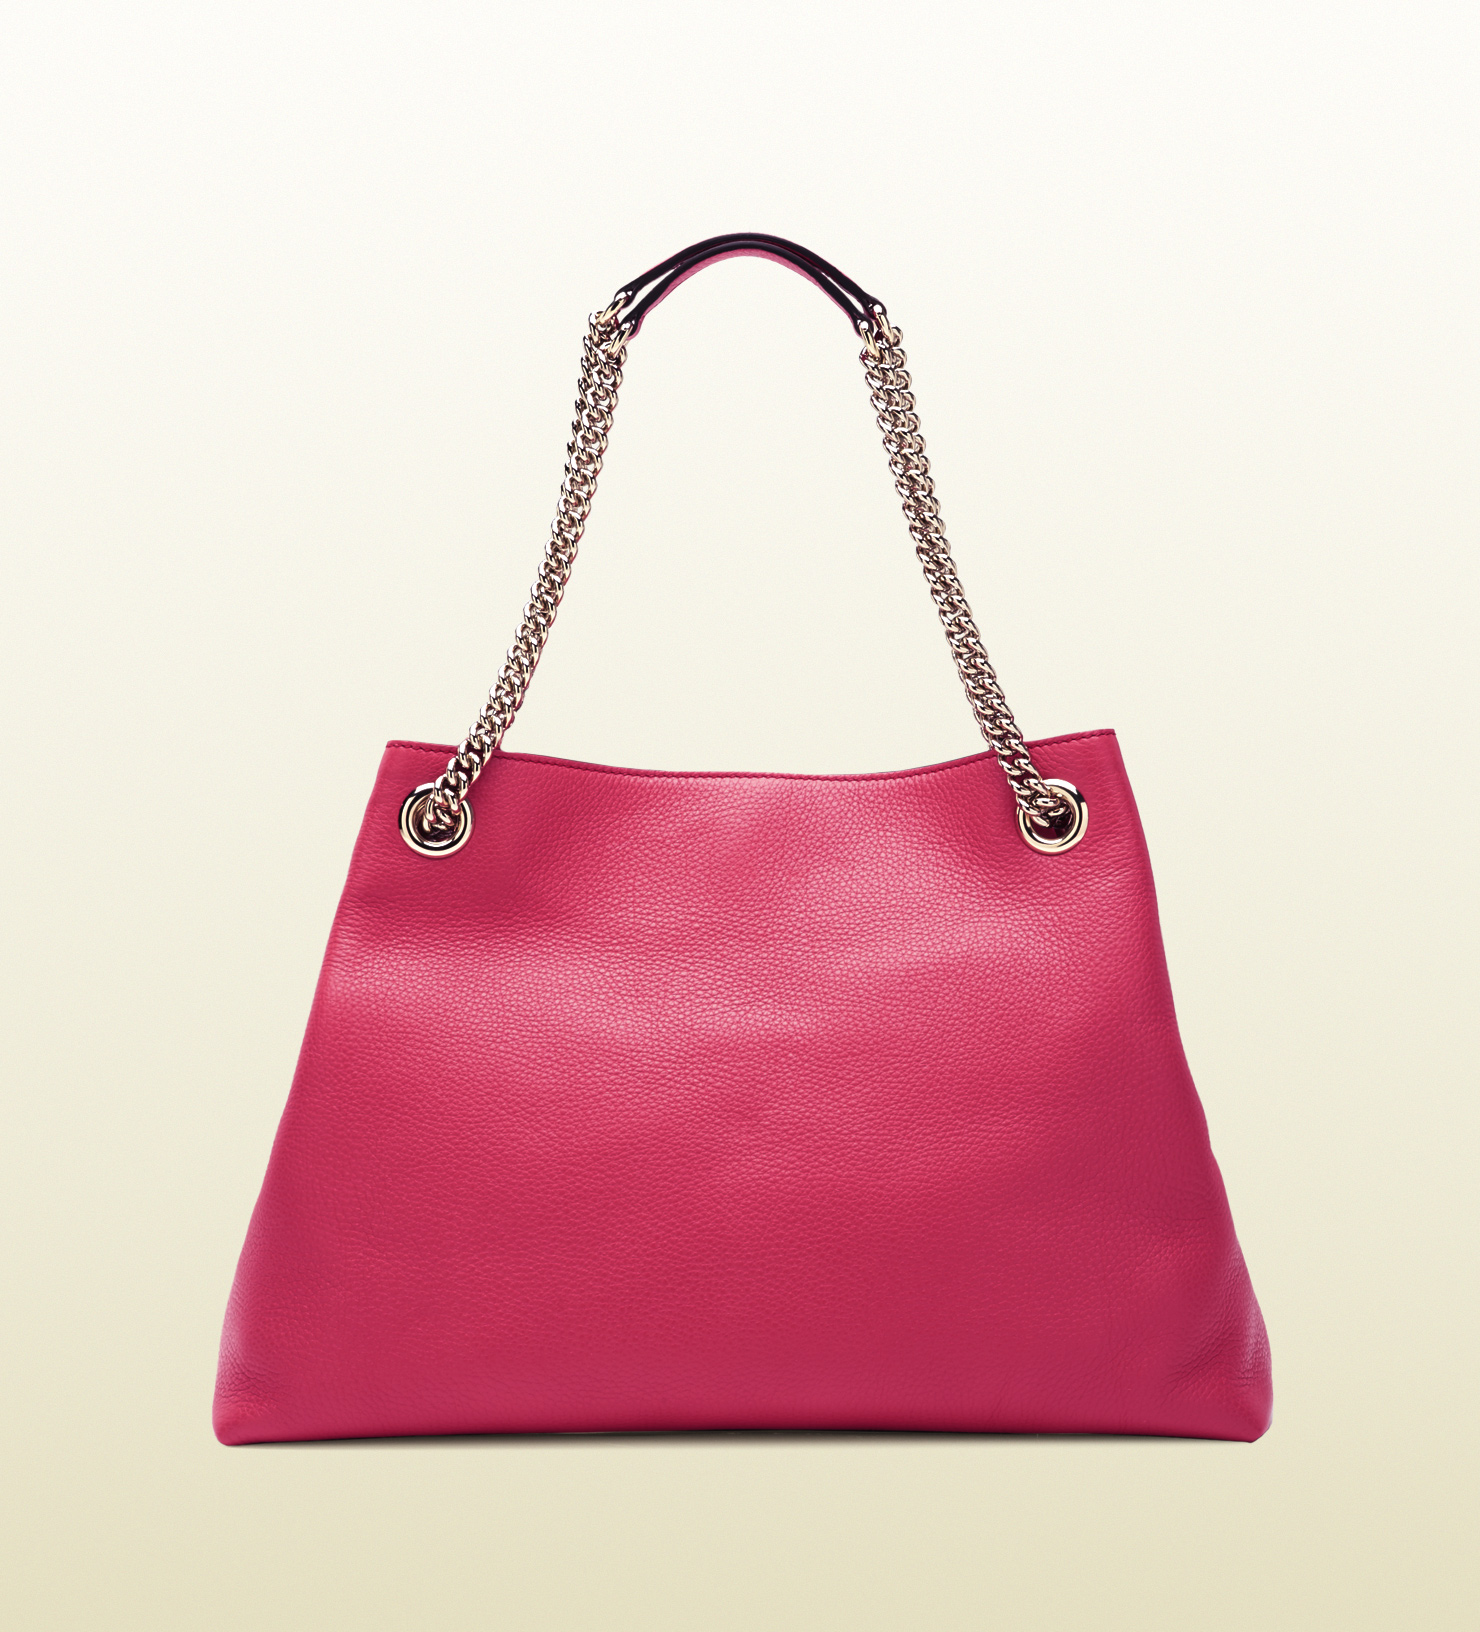 Gucci Soho Shocking Pink Leather Shoulder Bag - Lyst